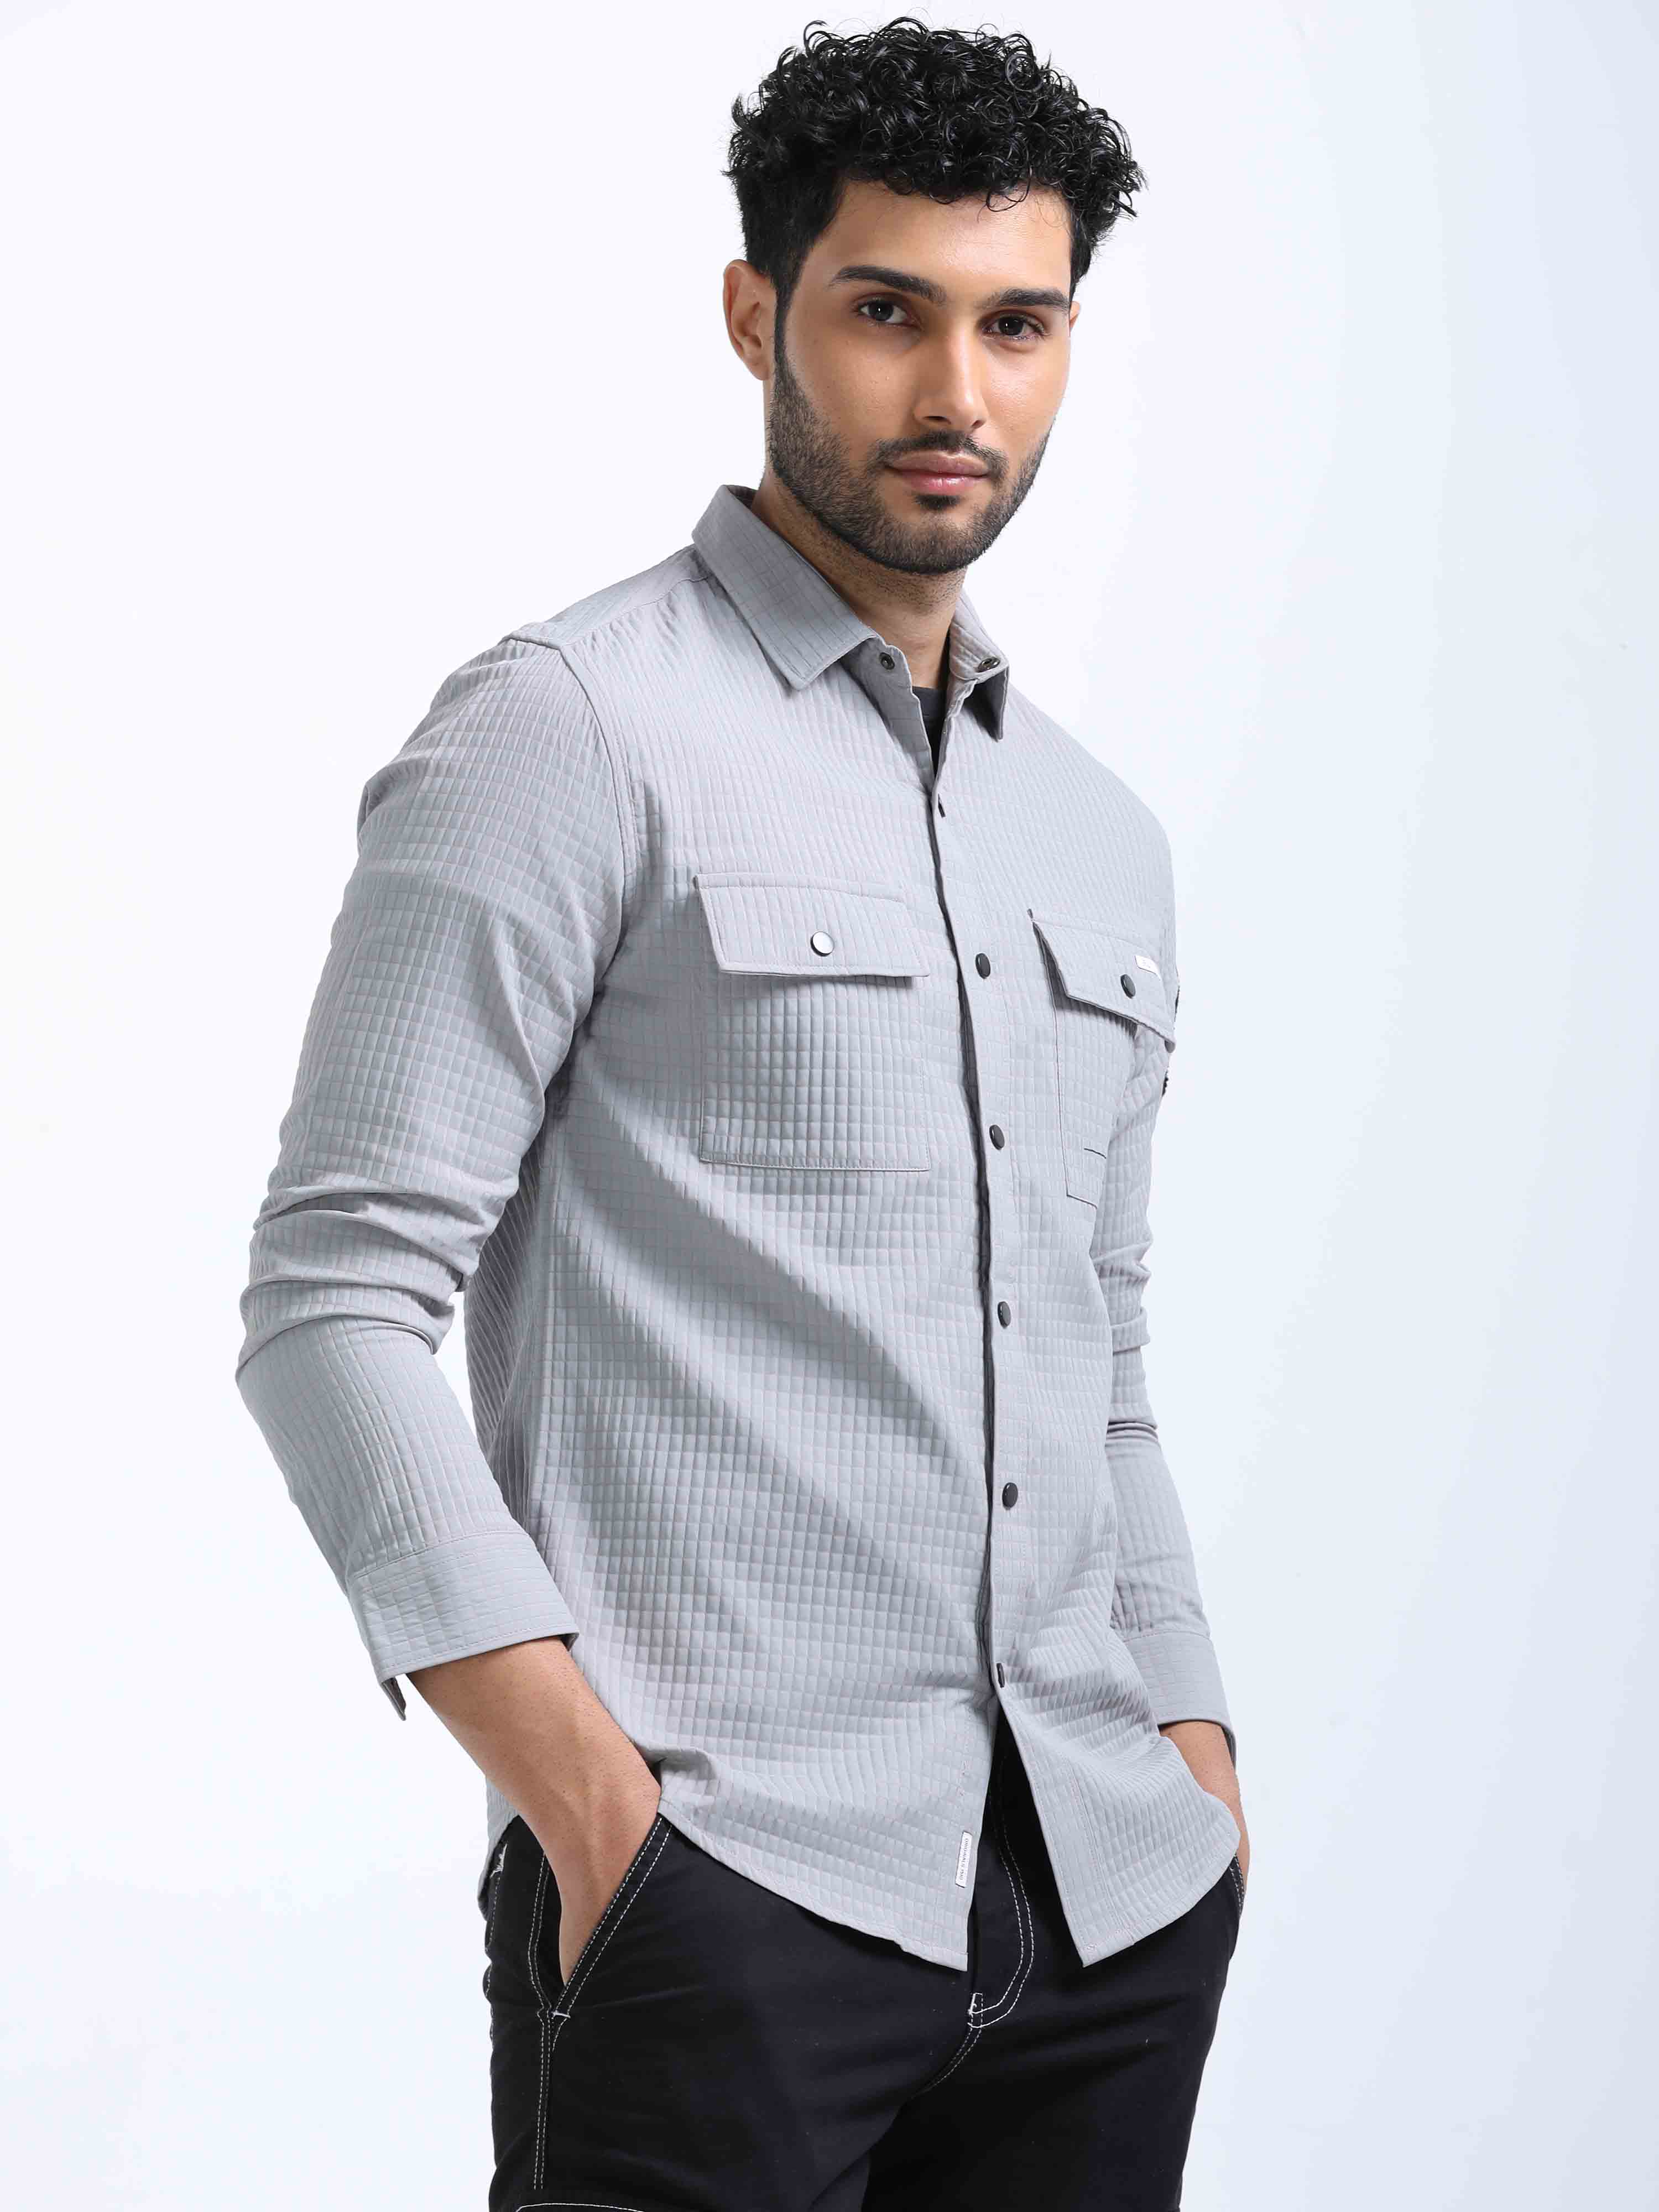 Buy Stylish Grey Denim Corduroy Shirt Mens Online – Fly69